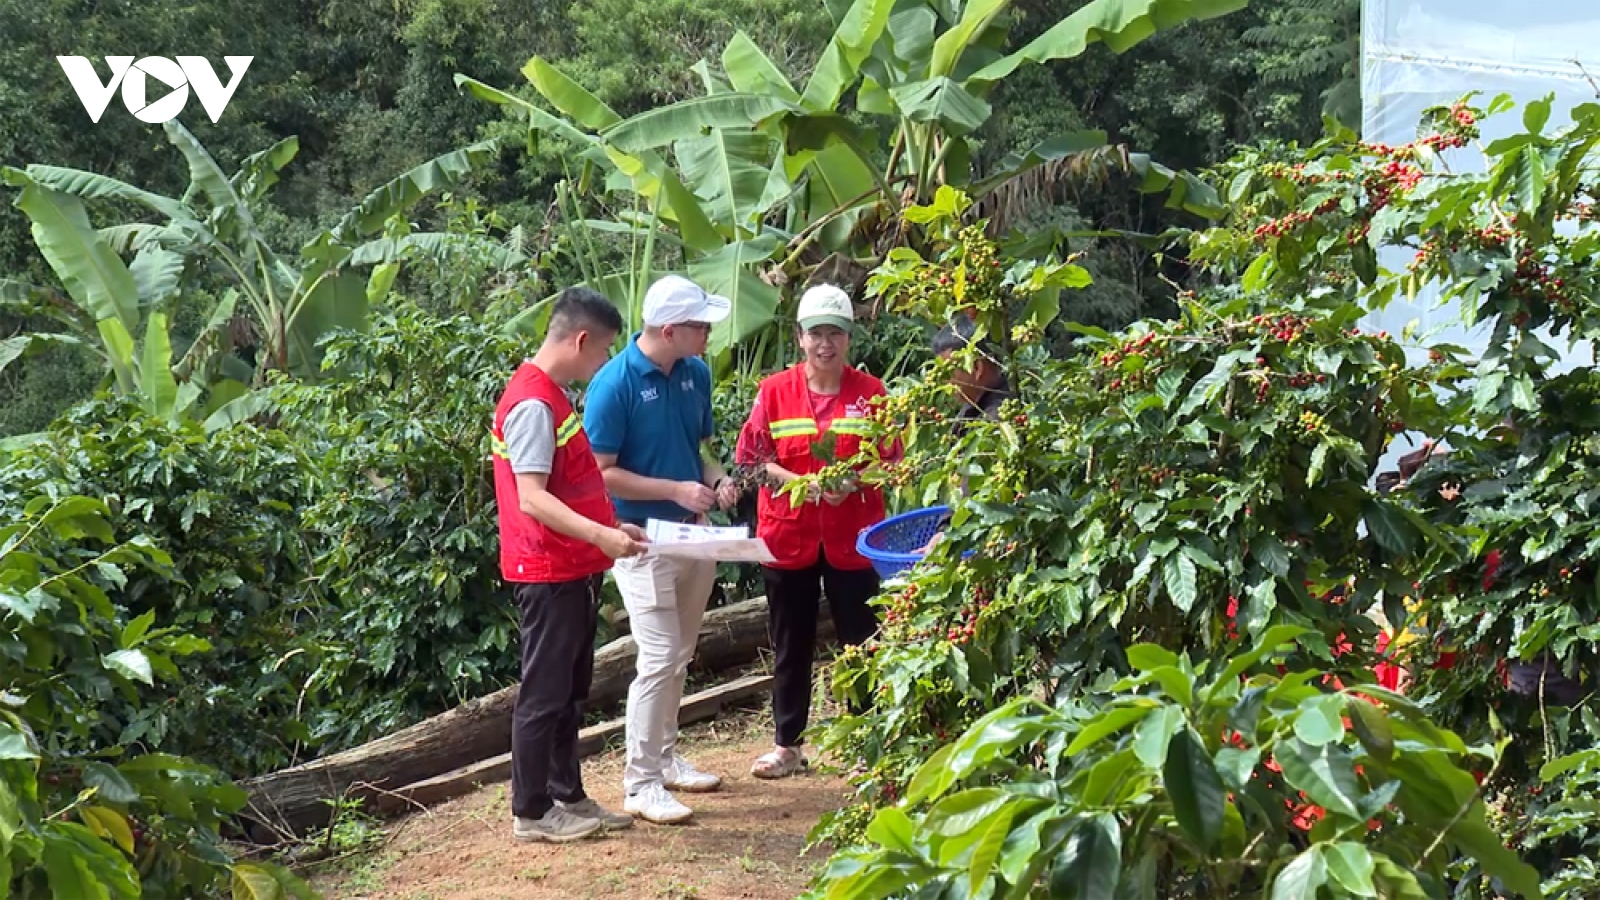 Lâm Đồng đẩy mạnh sản xuất cà phê theo chuỗi nông sản toàn cầu